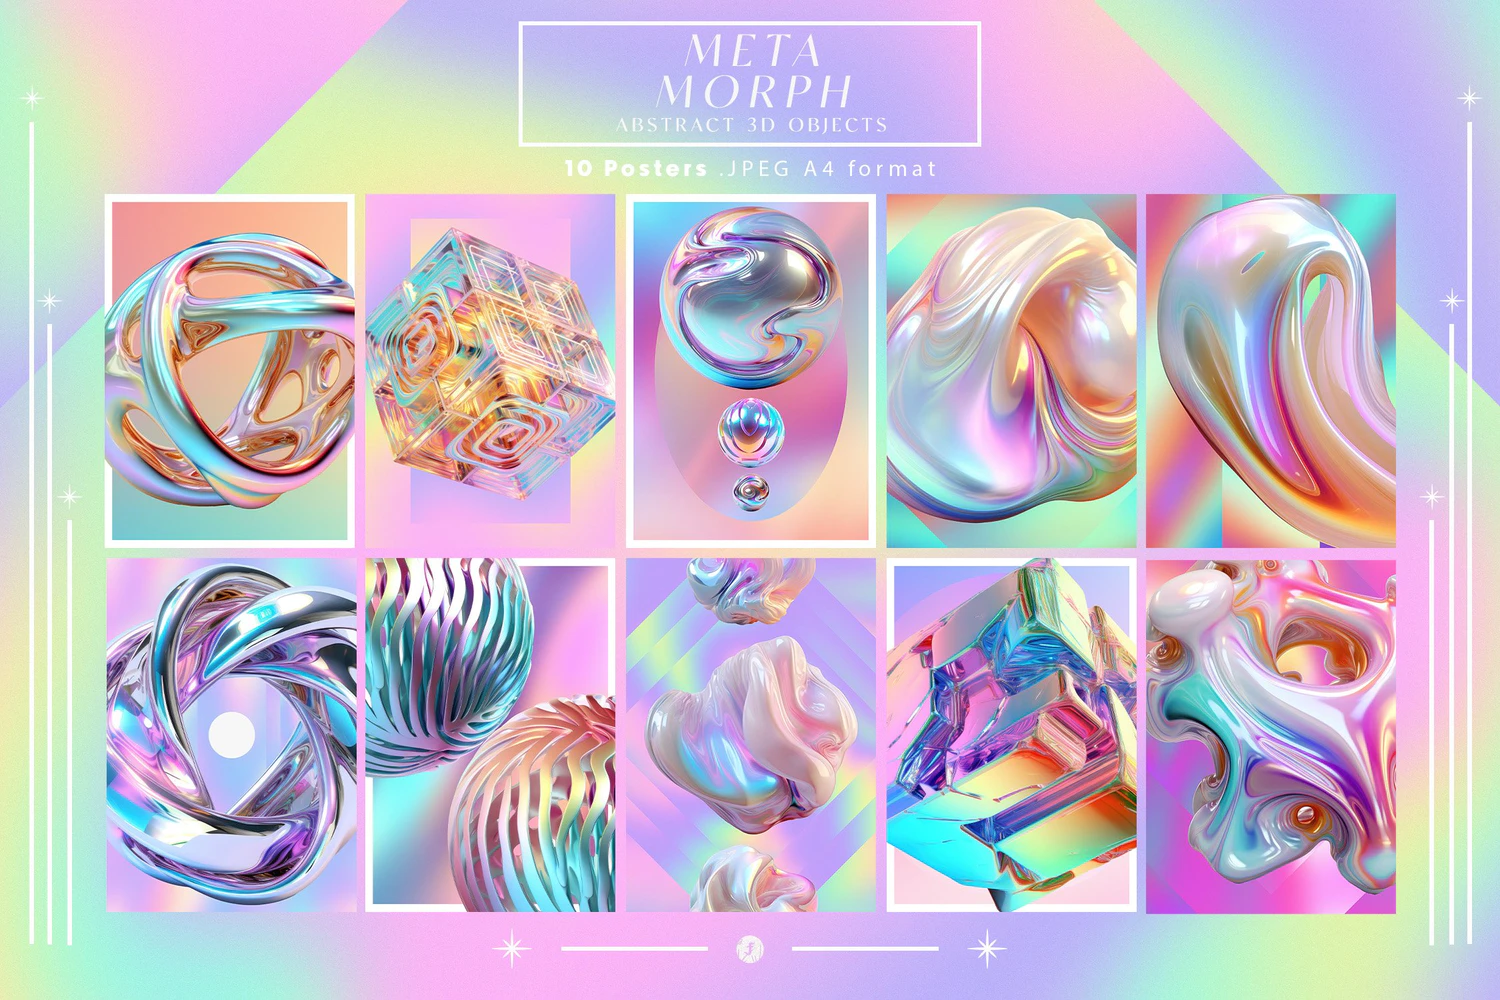 5258 绚丽彩虹色的3d金属抽象形状物体元素和背景图素材 MetaMorph Abstract 3D Objects@GOOODME.COM